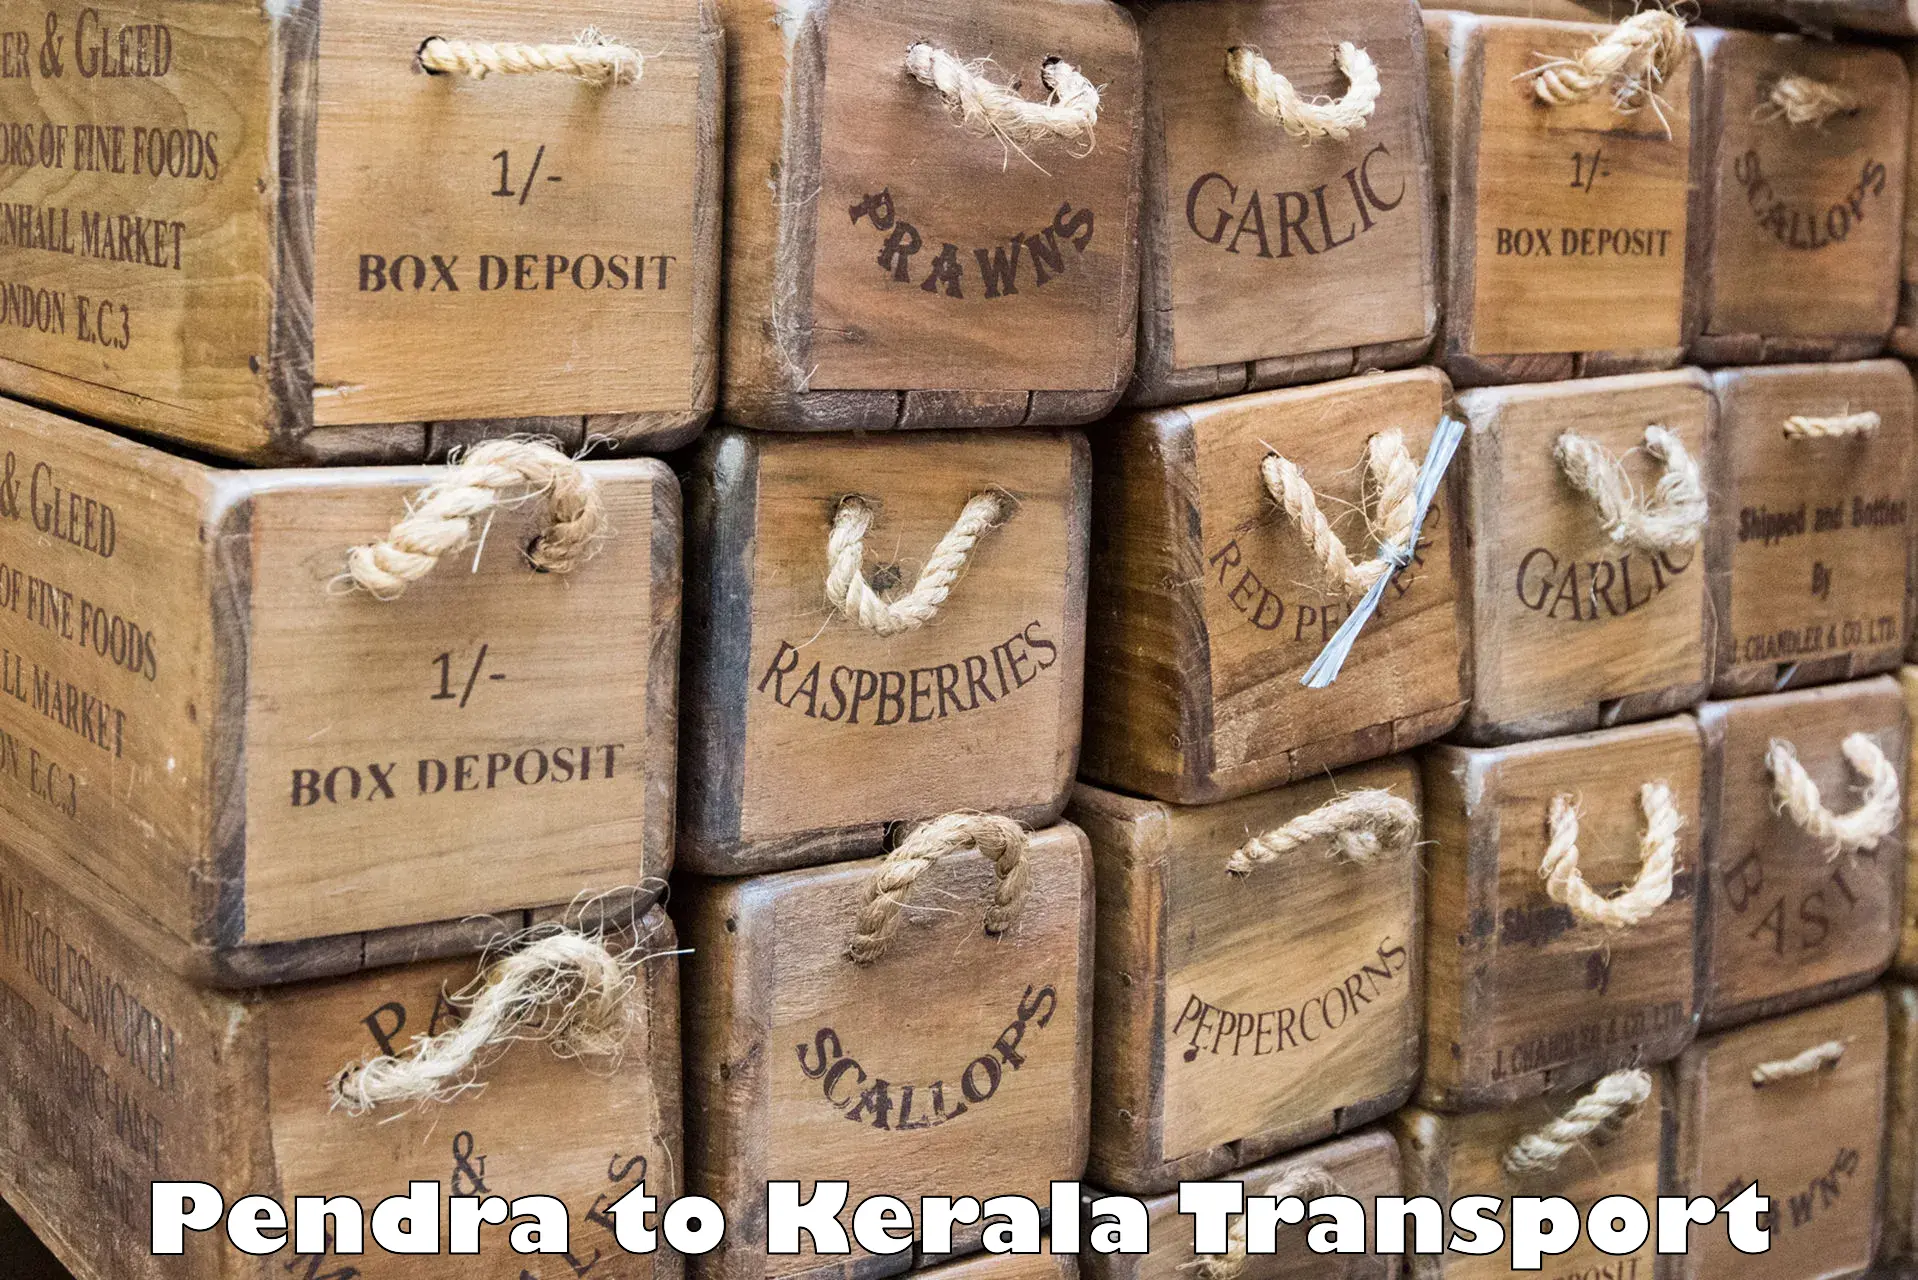 Daily parcel service transport Pendra to Kondotty